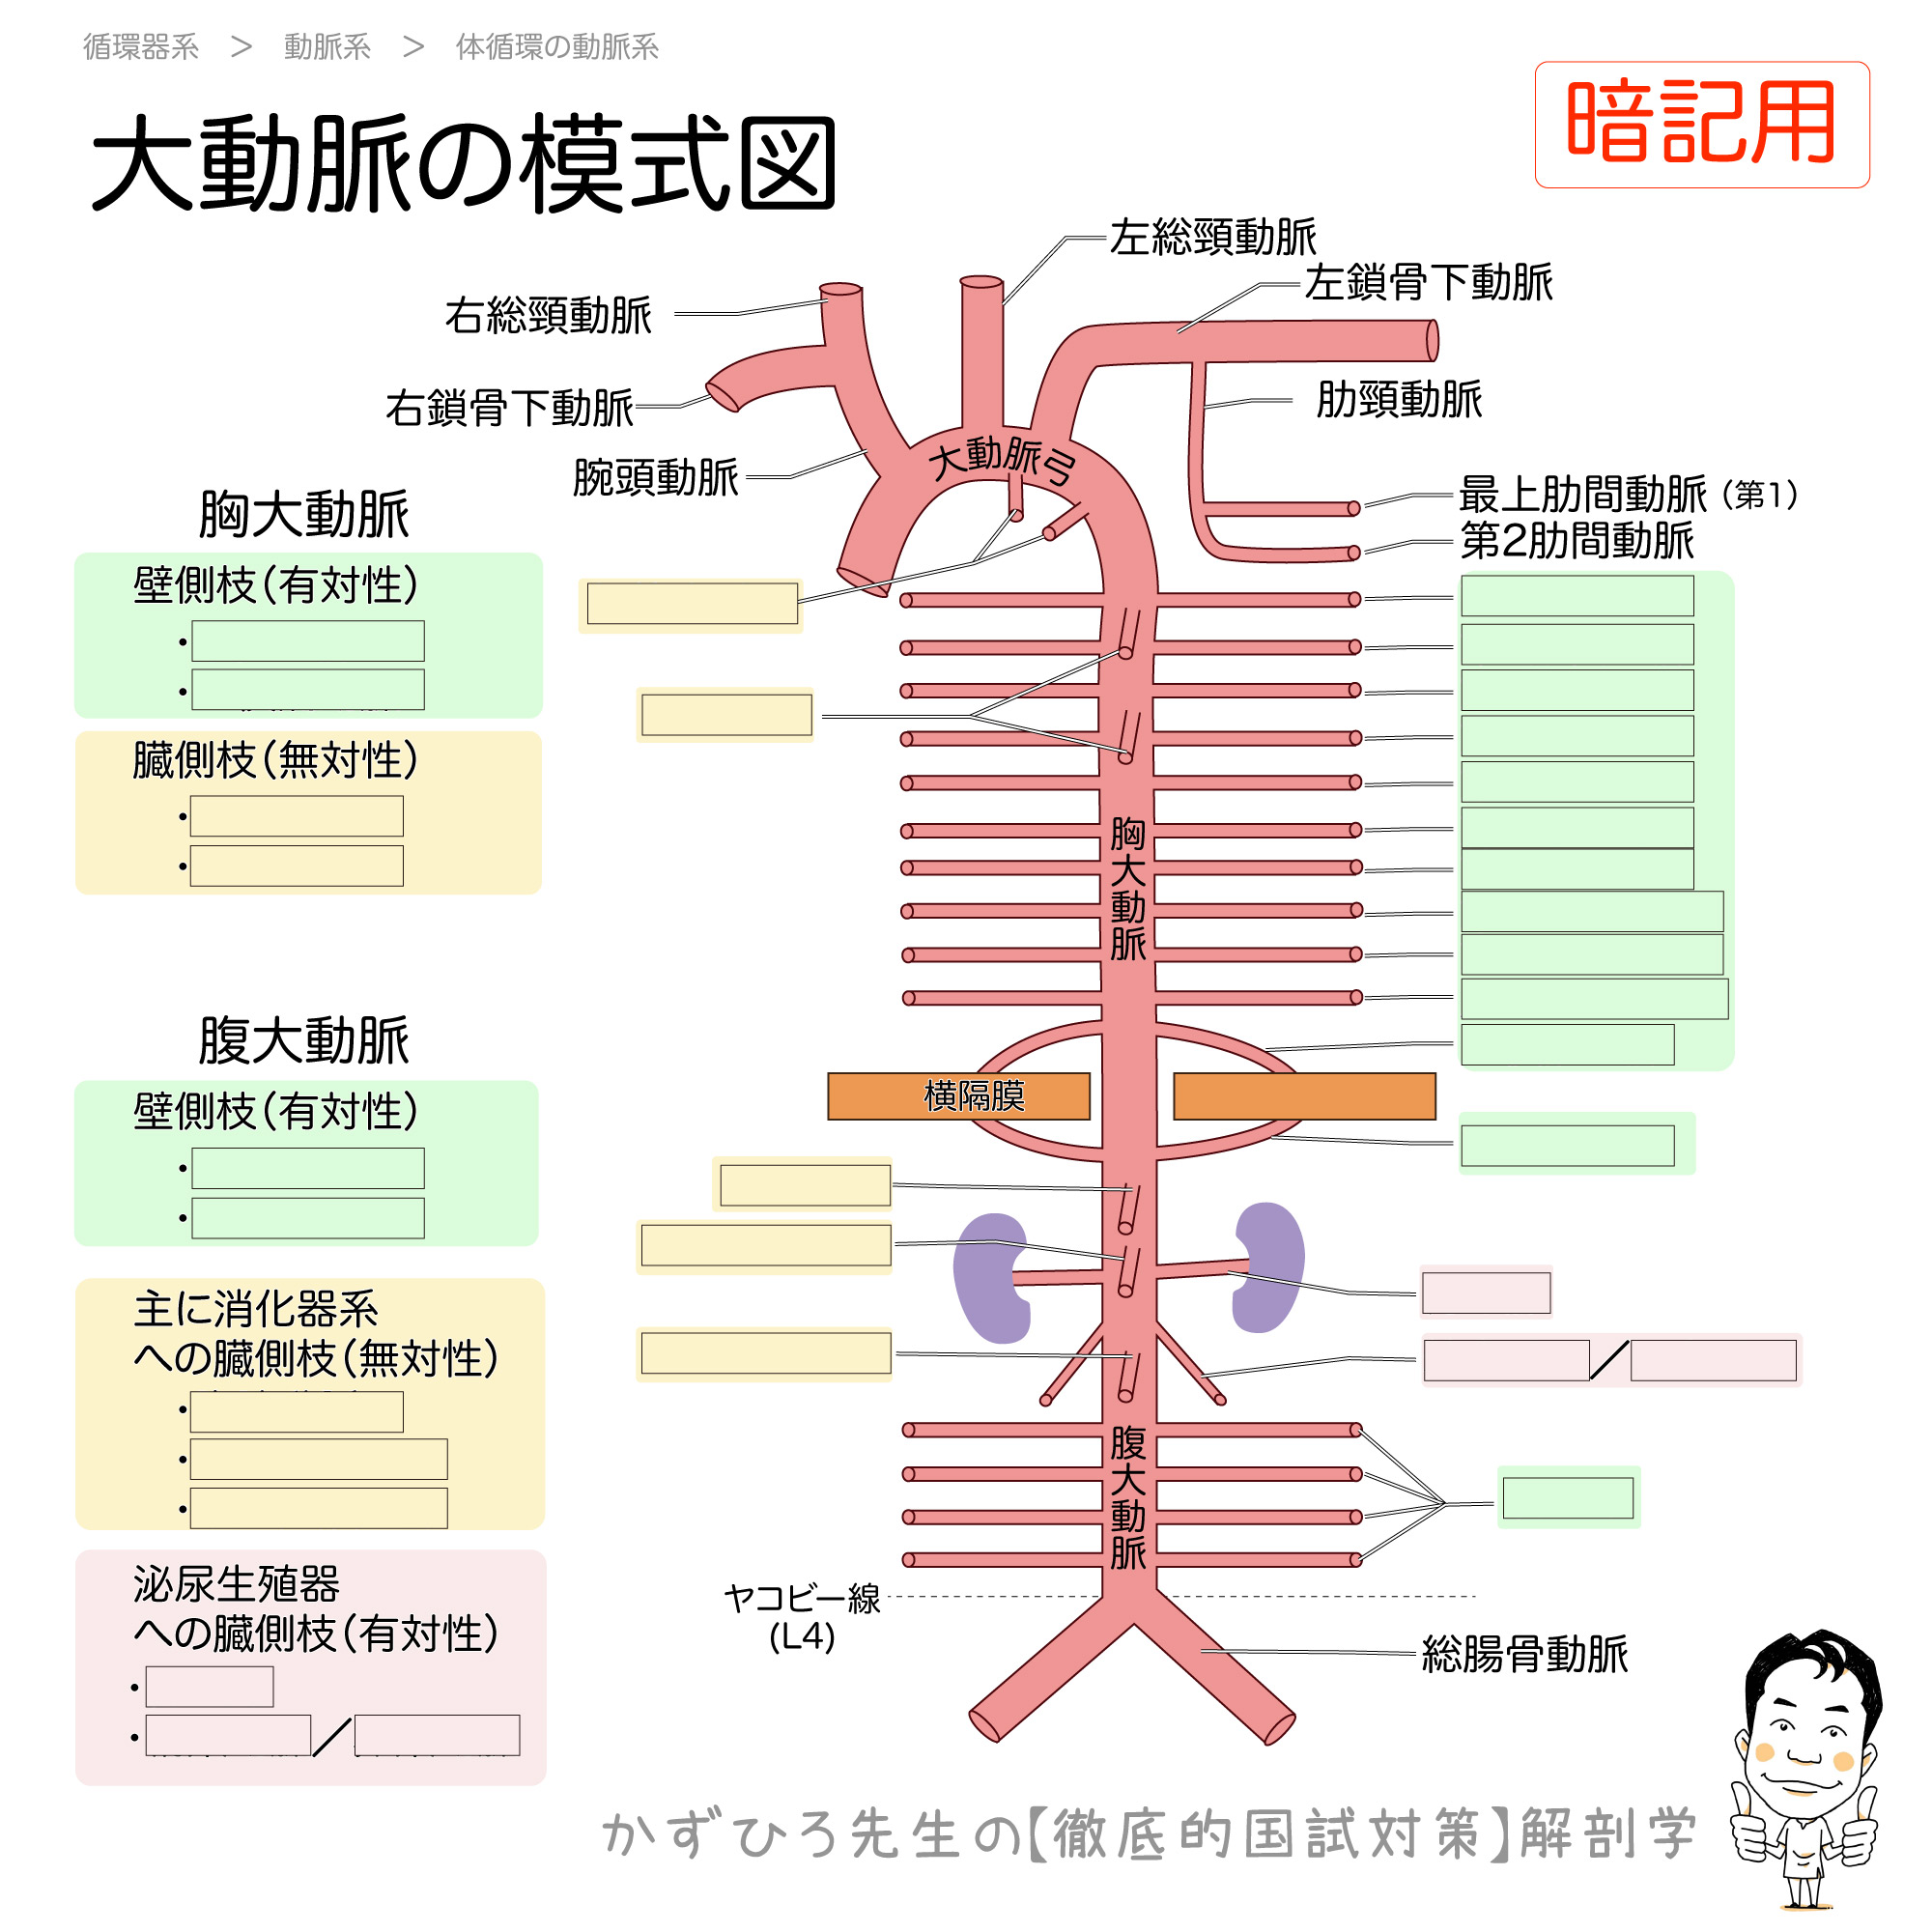 大動脈とその枝 模式図 徹底的解剖学